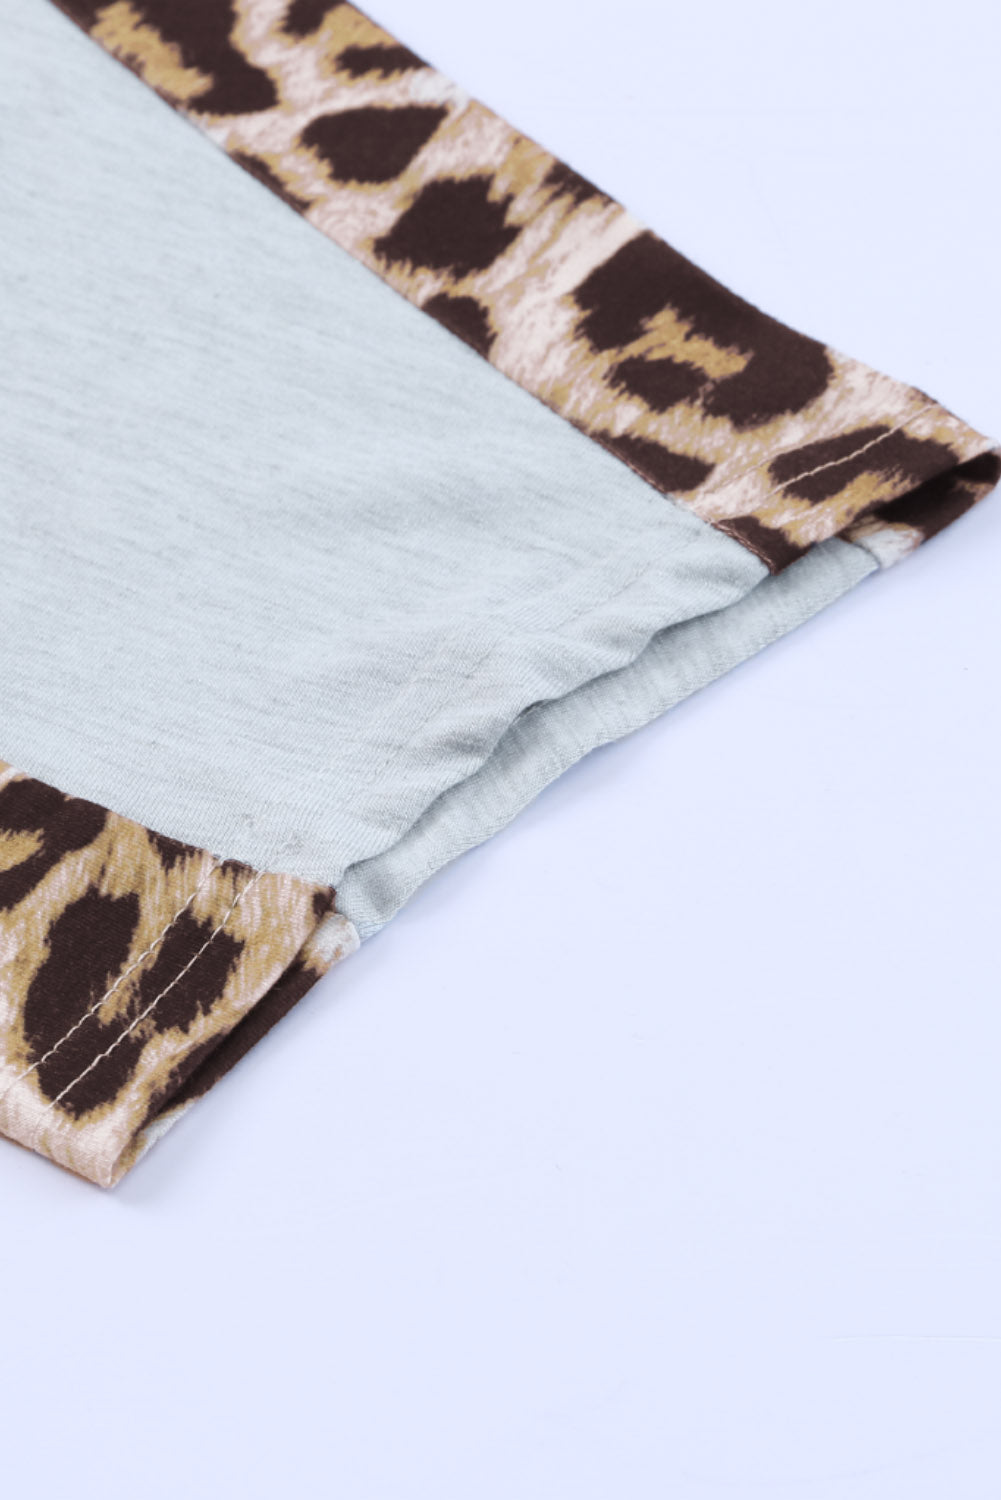 T-shirt a maniche corte con scollo a O con giunture leopardate grigie